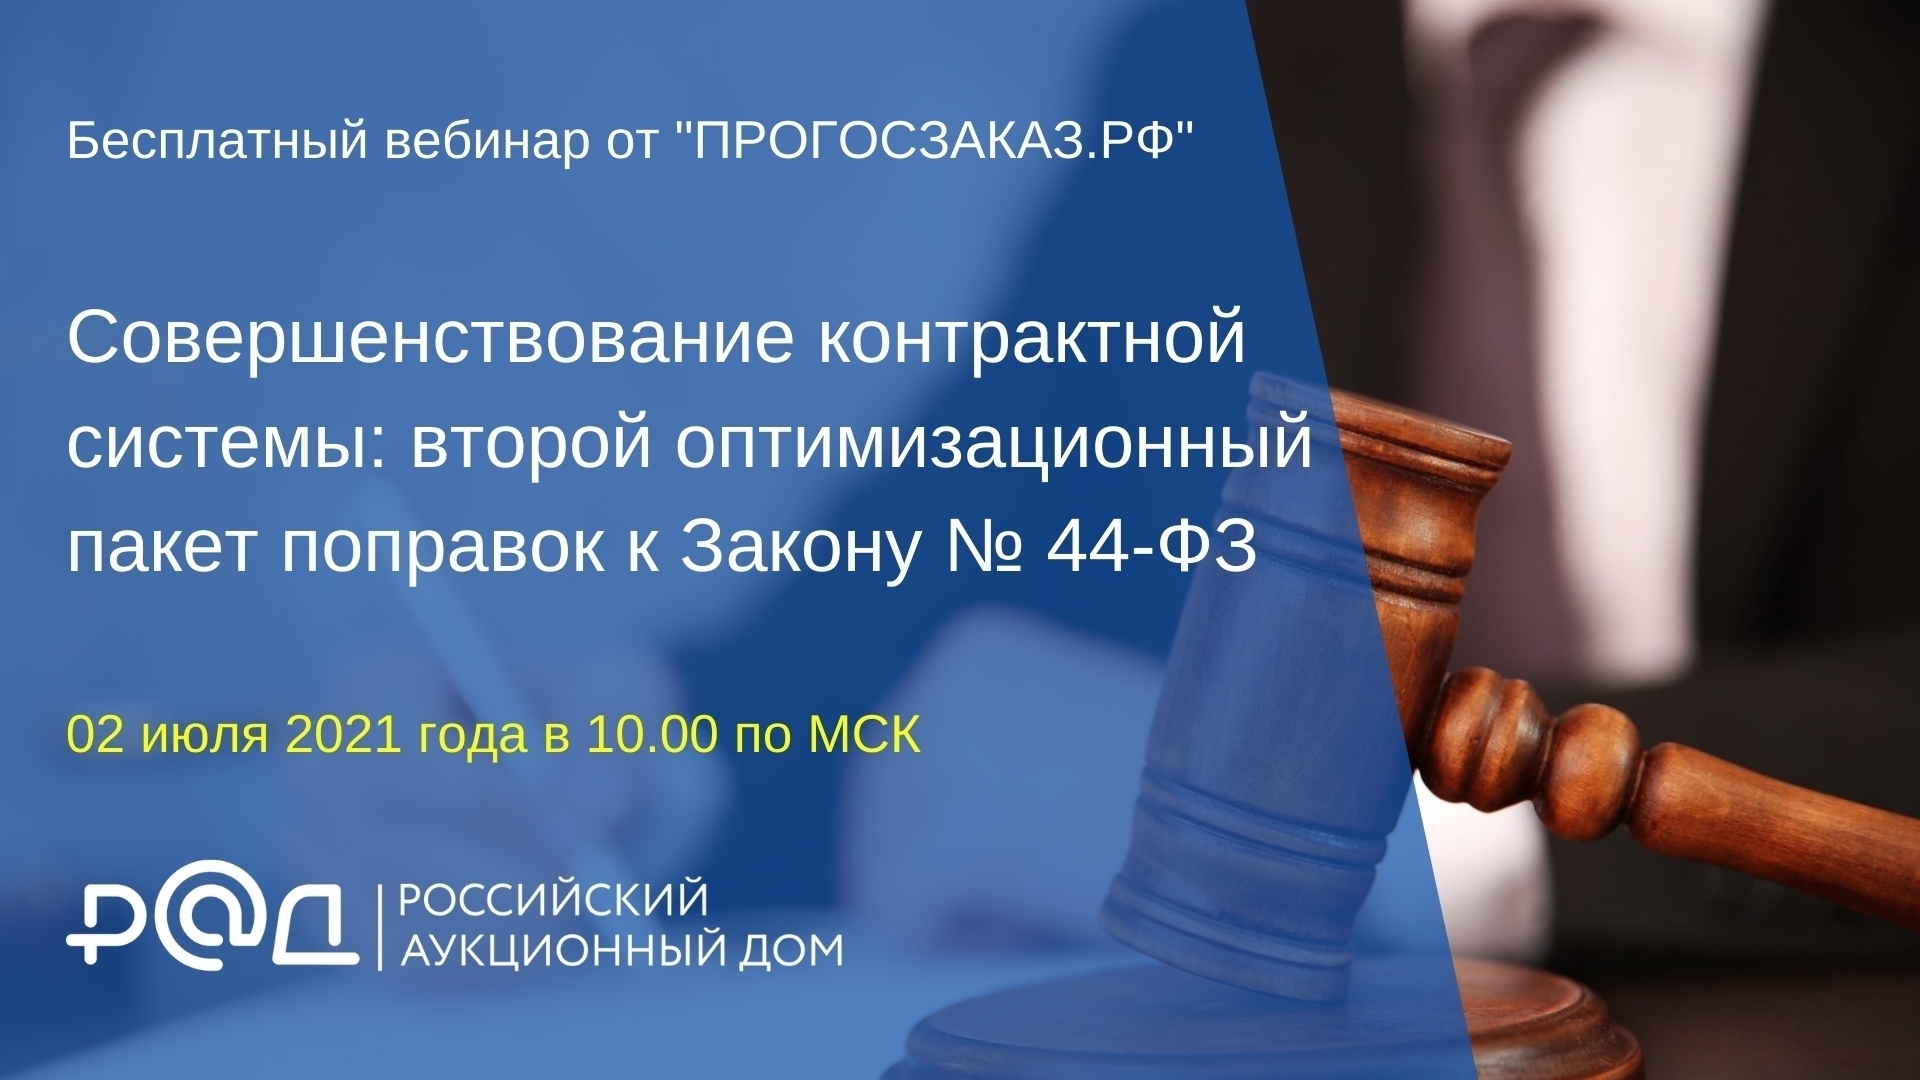 2 июля 2021 года  в 10.00 состоялся вебинар на тему «Совершенствование контрактной системы: второй оптимизационный пакет поправок к Закону № 44-ФЗ» 